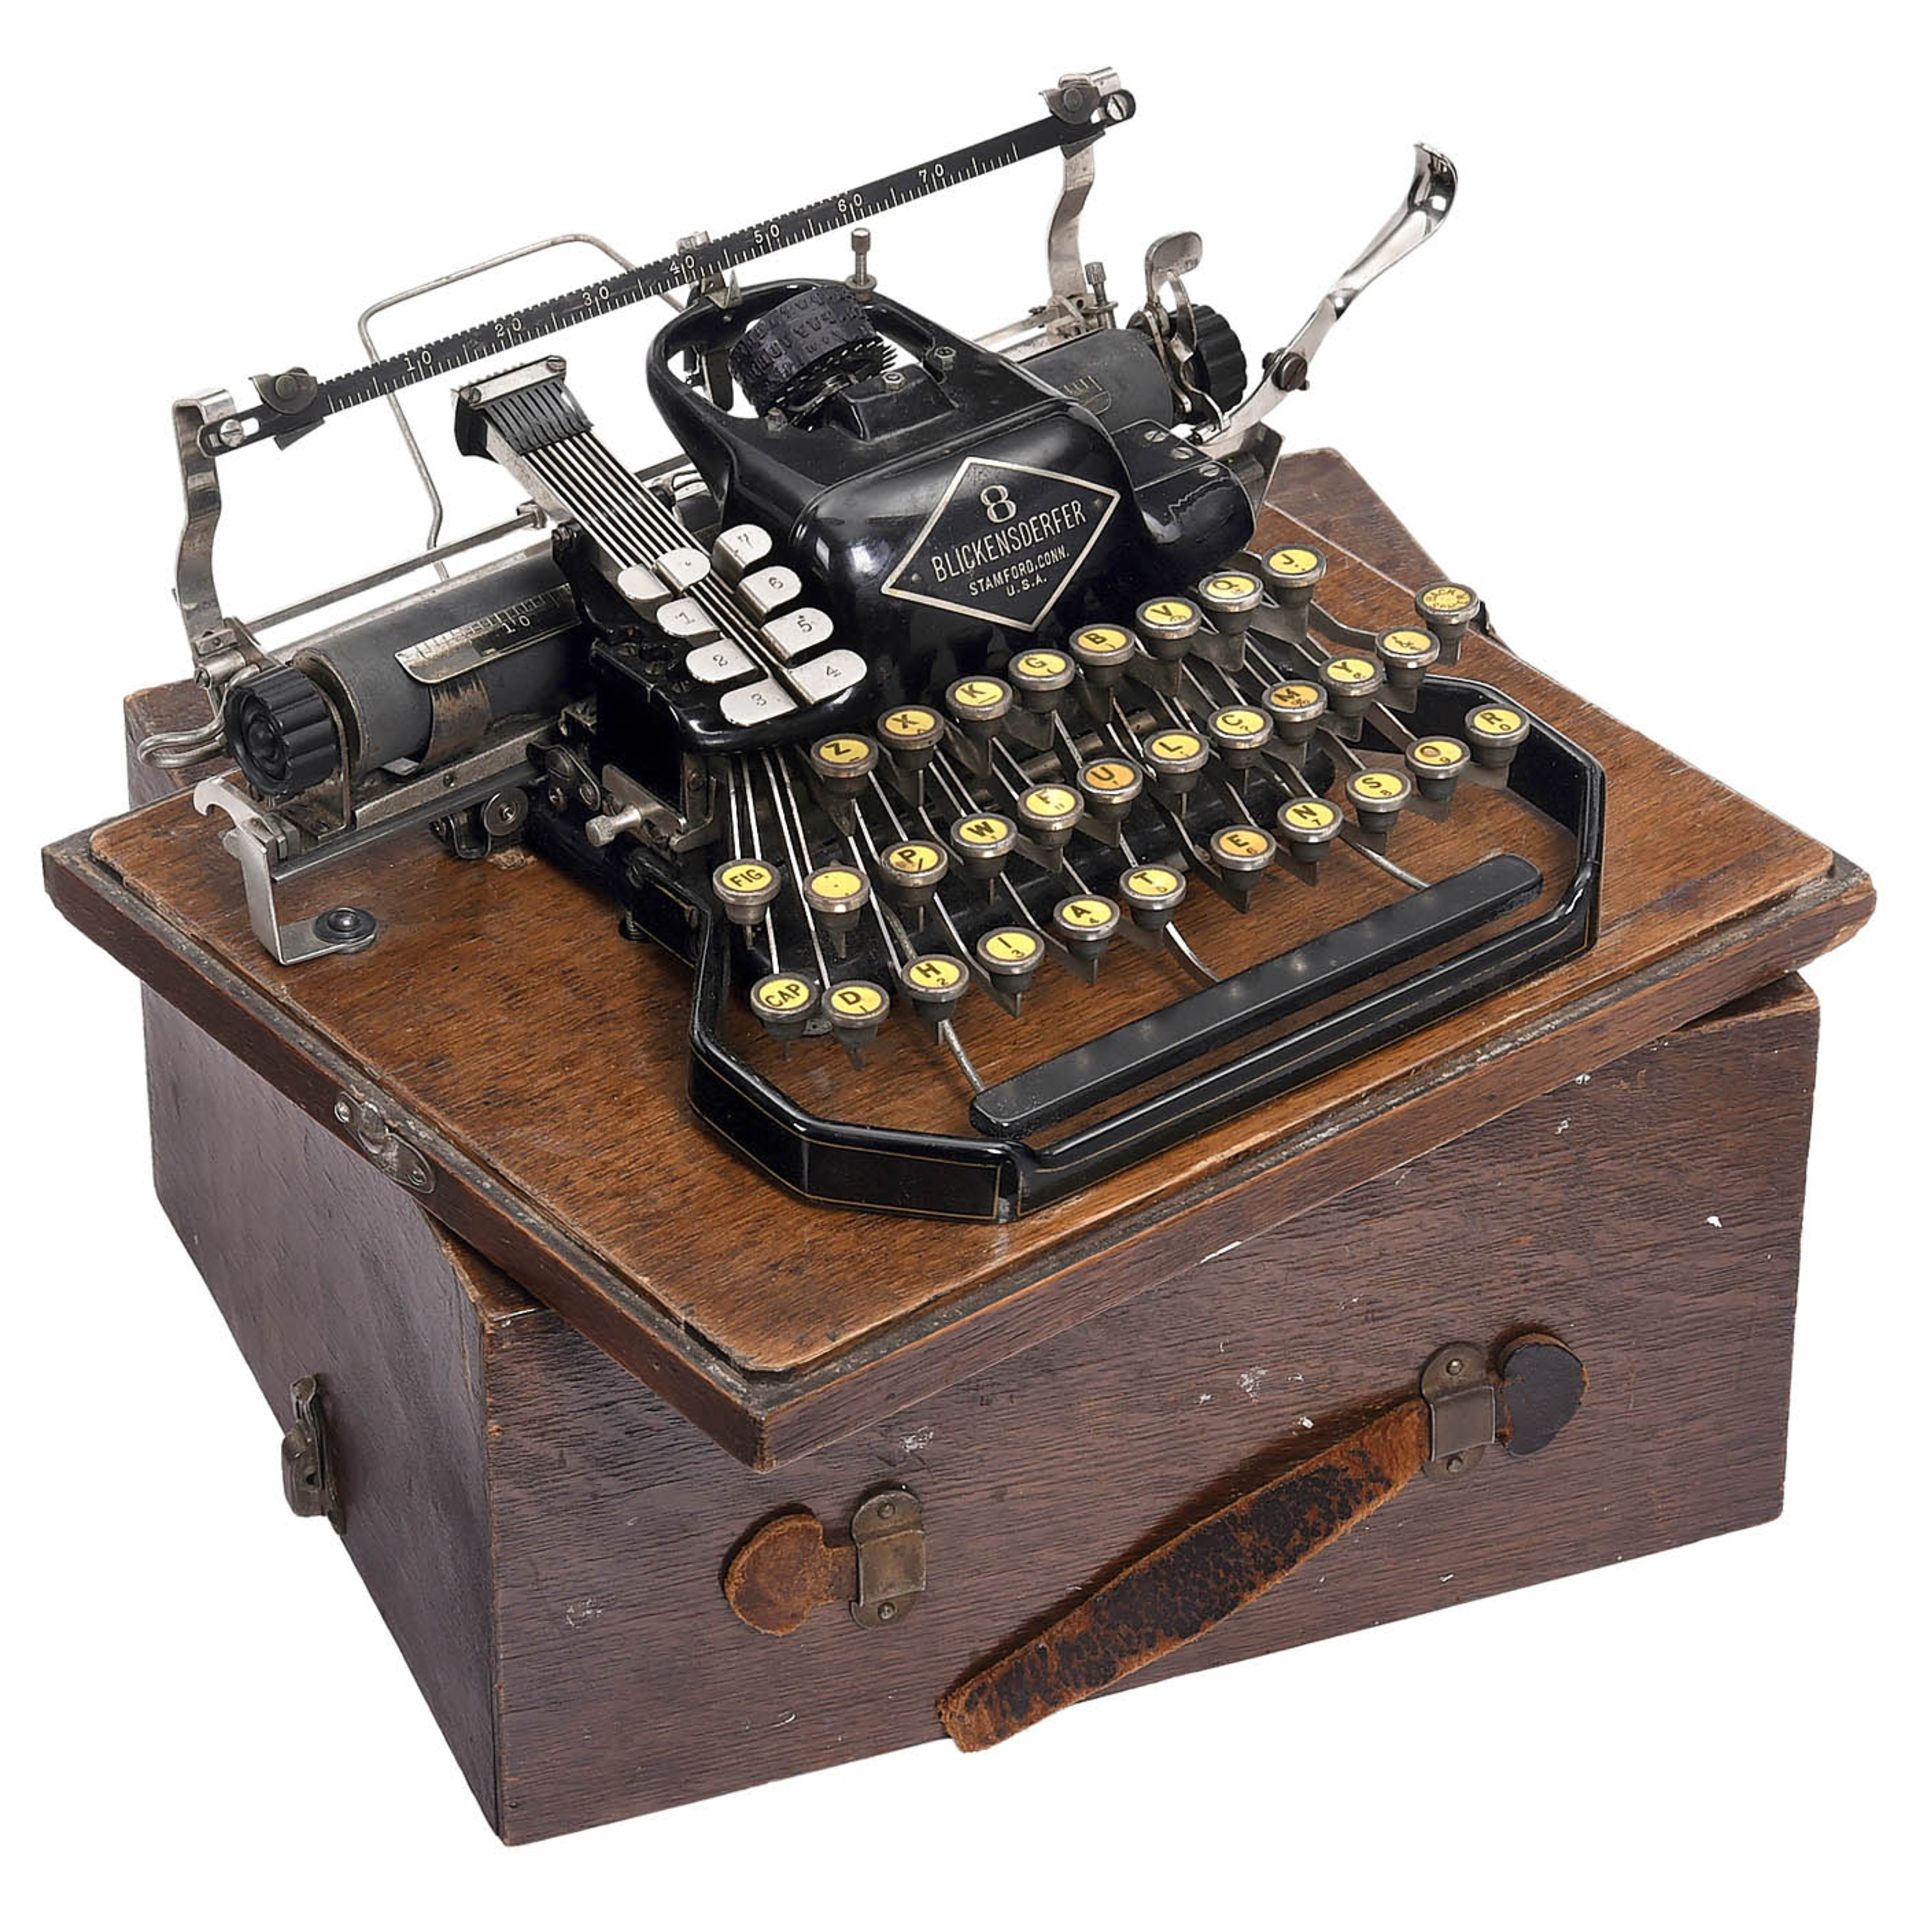 3 Blickensderfer Typewriters - Bild 4 aus 4